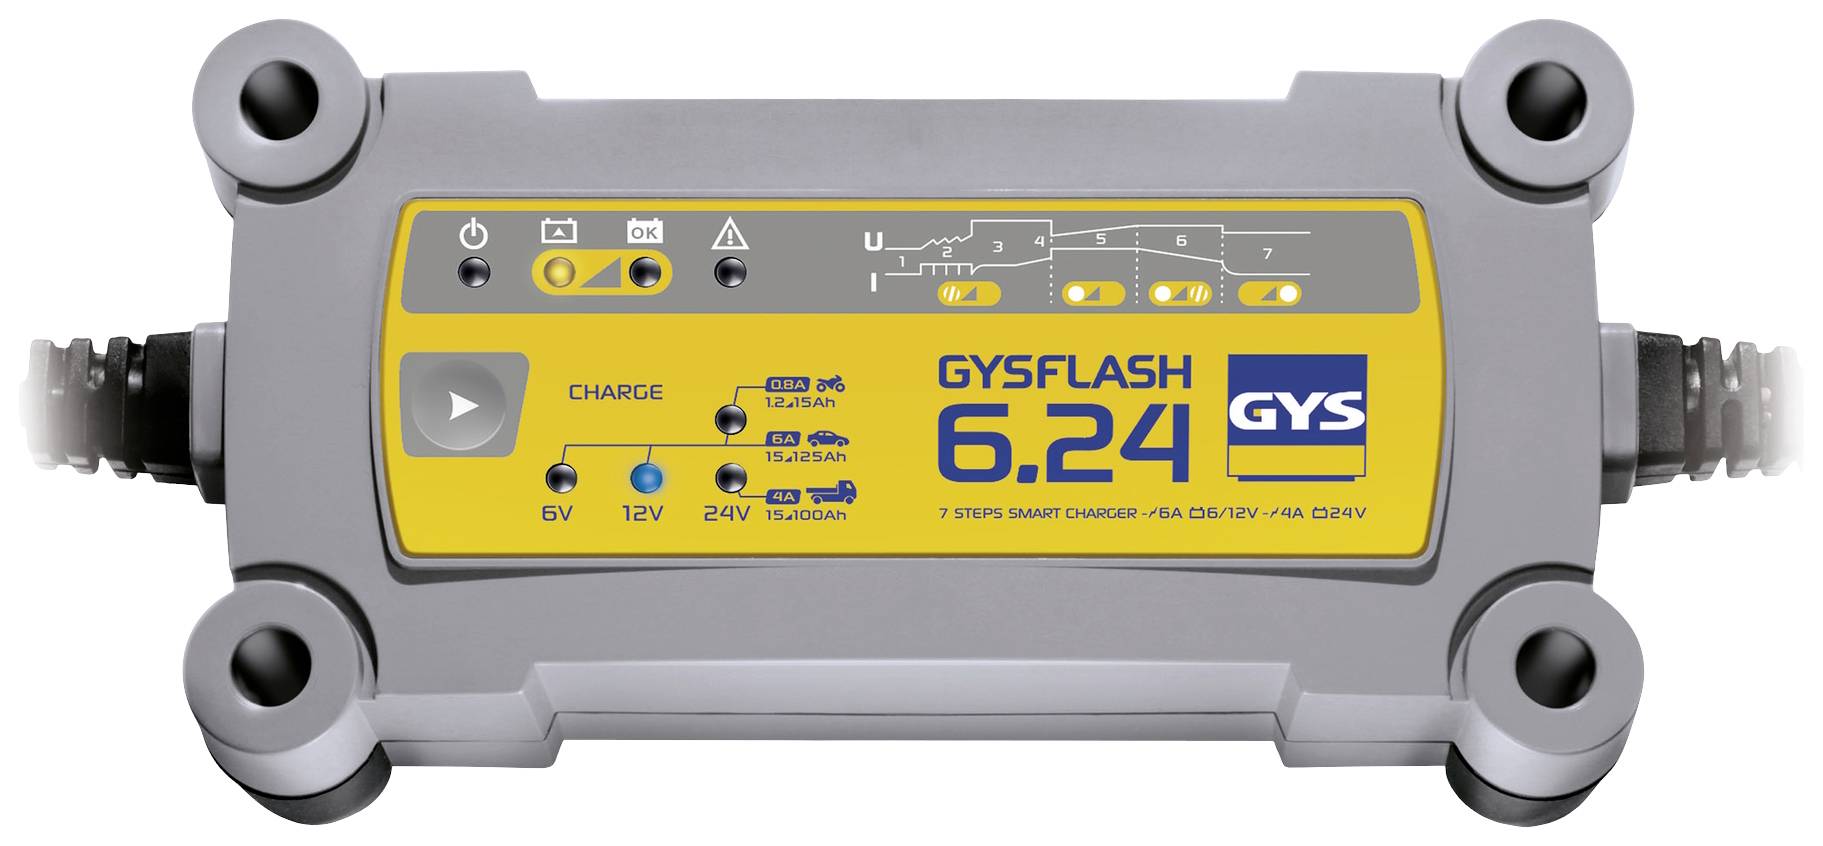 Chargeur de batterie GYSFLASH 6.24 pour batterie 6V 12V 24V de 1.2 à 125ah  029460